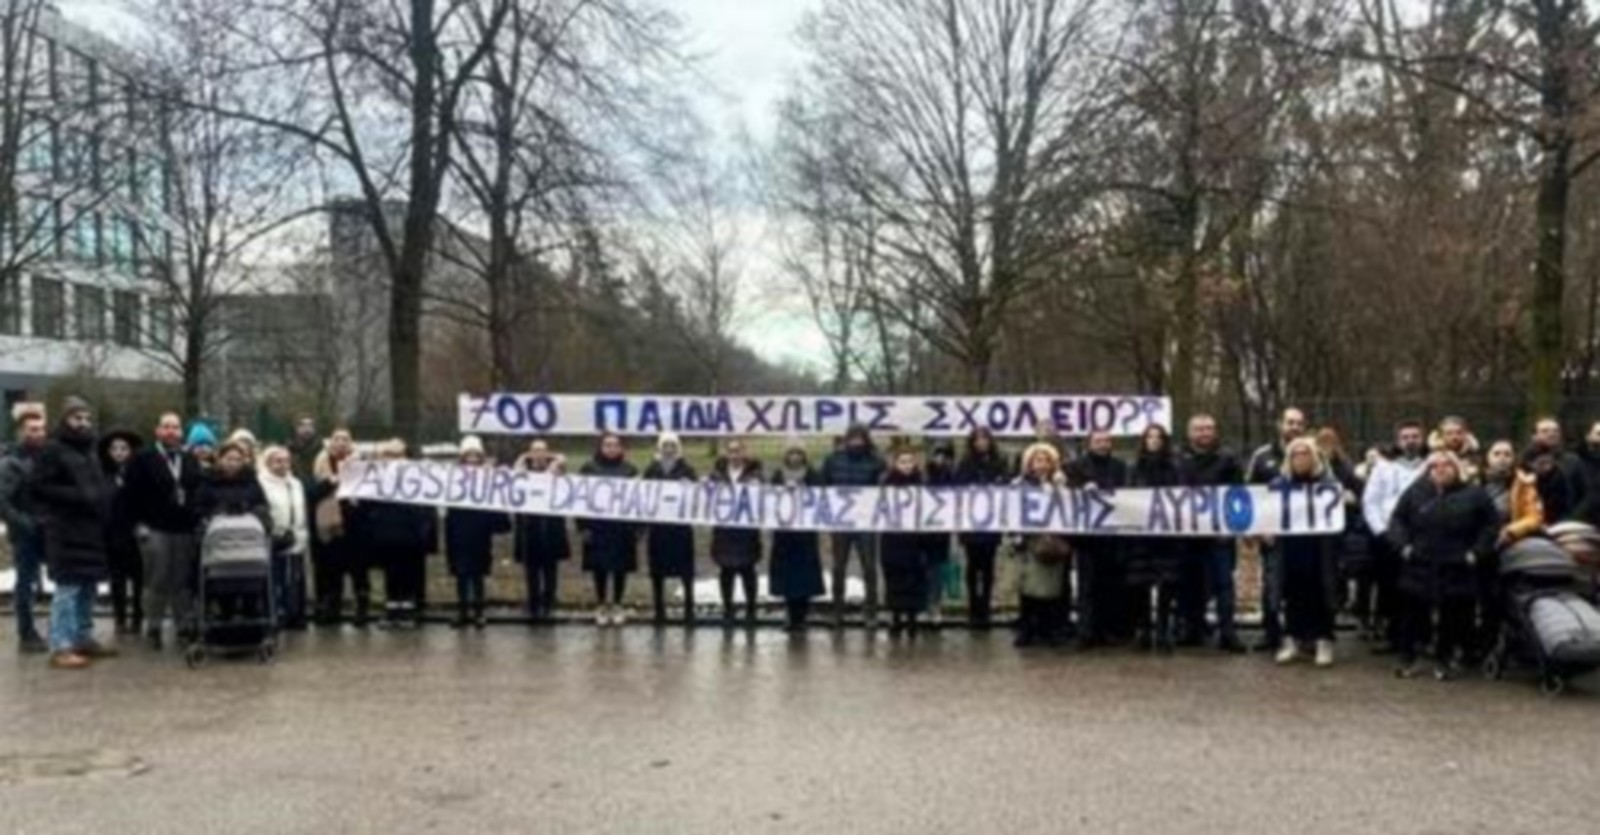 Μόναχο: Νέα διαμαρτυρία για τα ελληνικά σχολεία-“Μας εμπαίζουν πρόξενος και Υπουργεία”